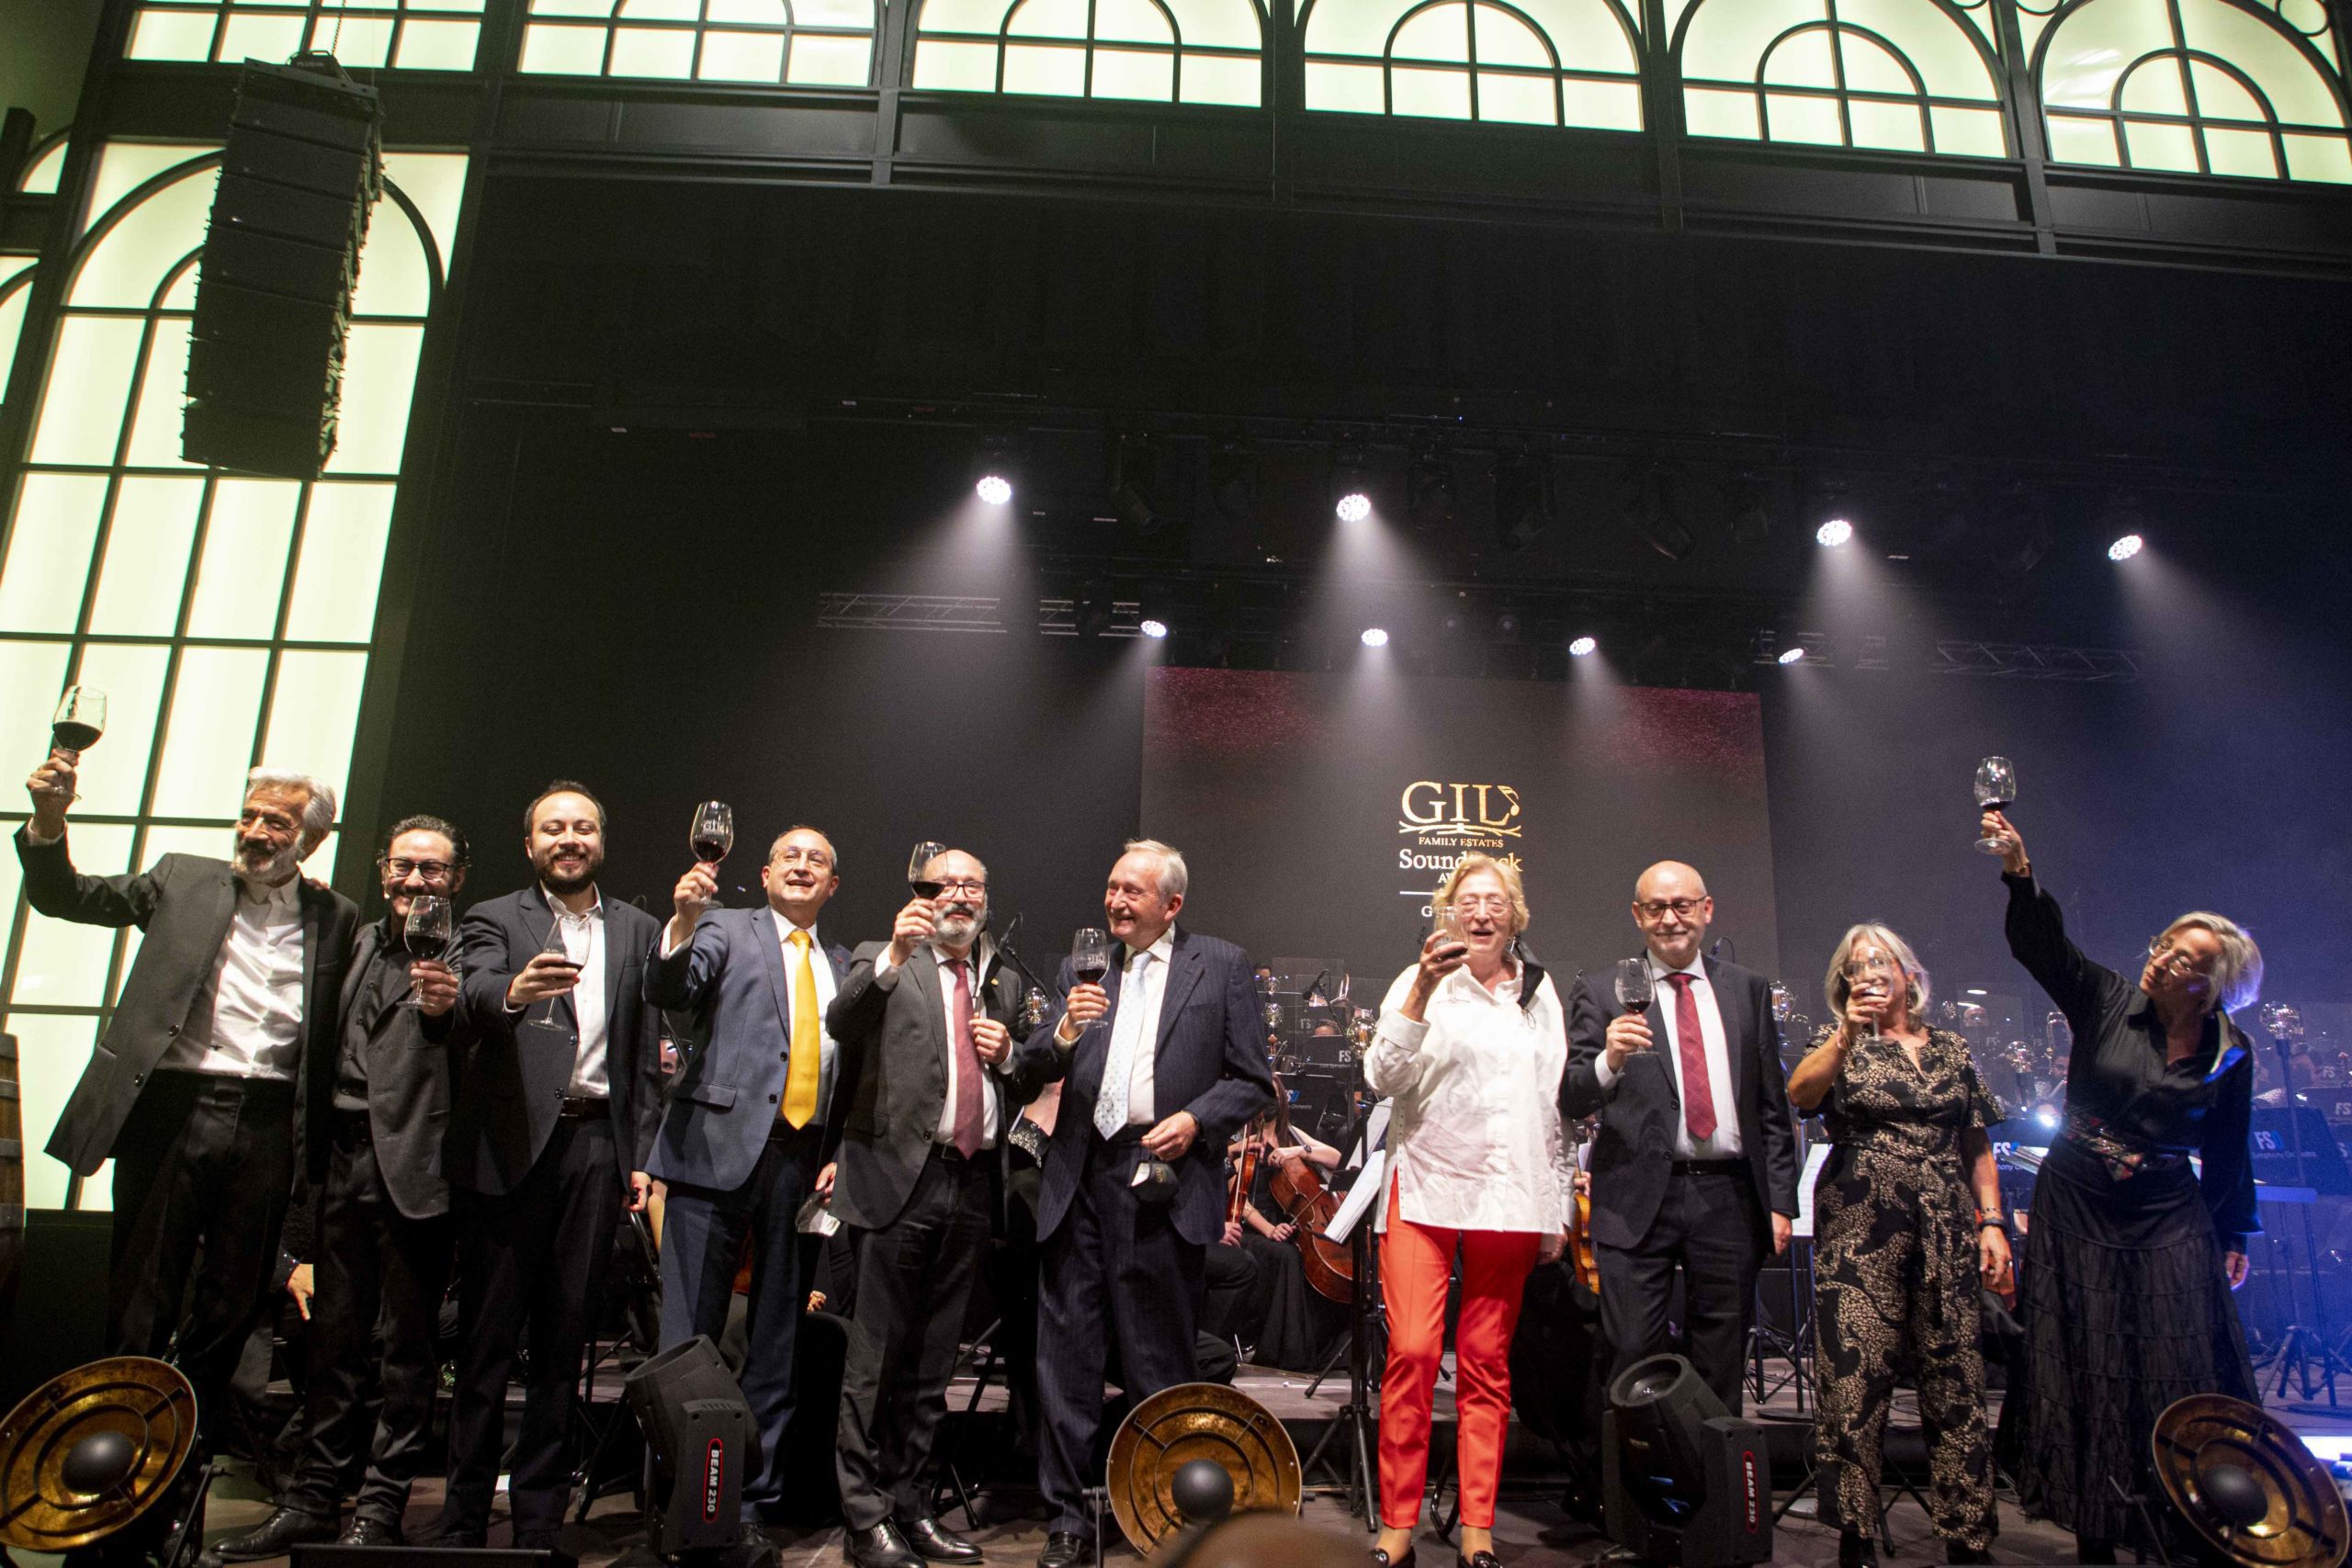 El Gil Soundtrack Award se convierte en el mejor ejemplo de apoyo a la cultura